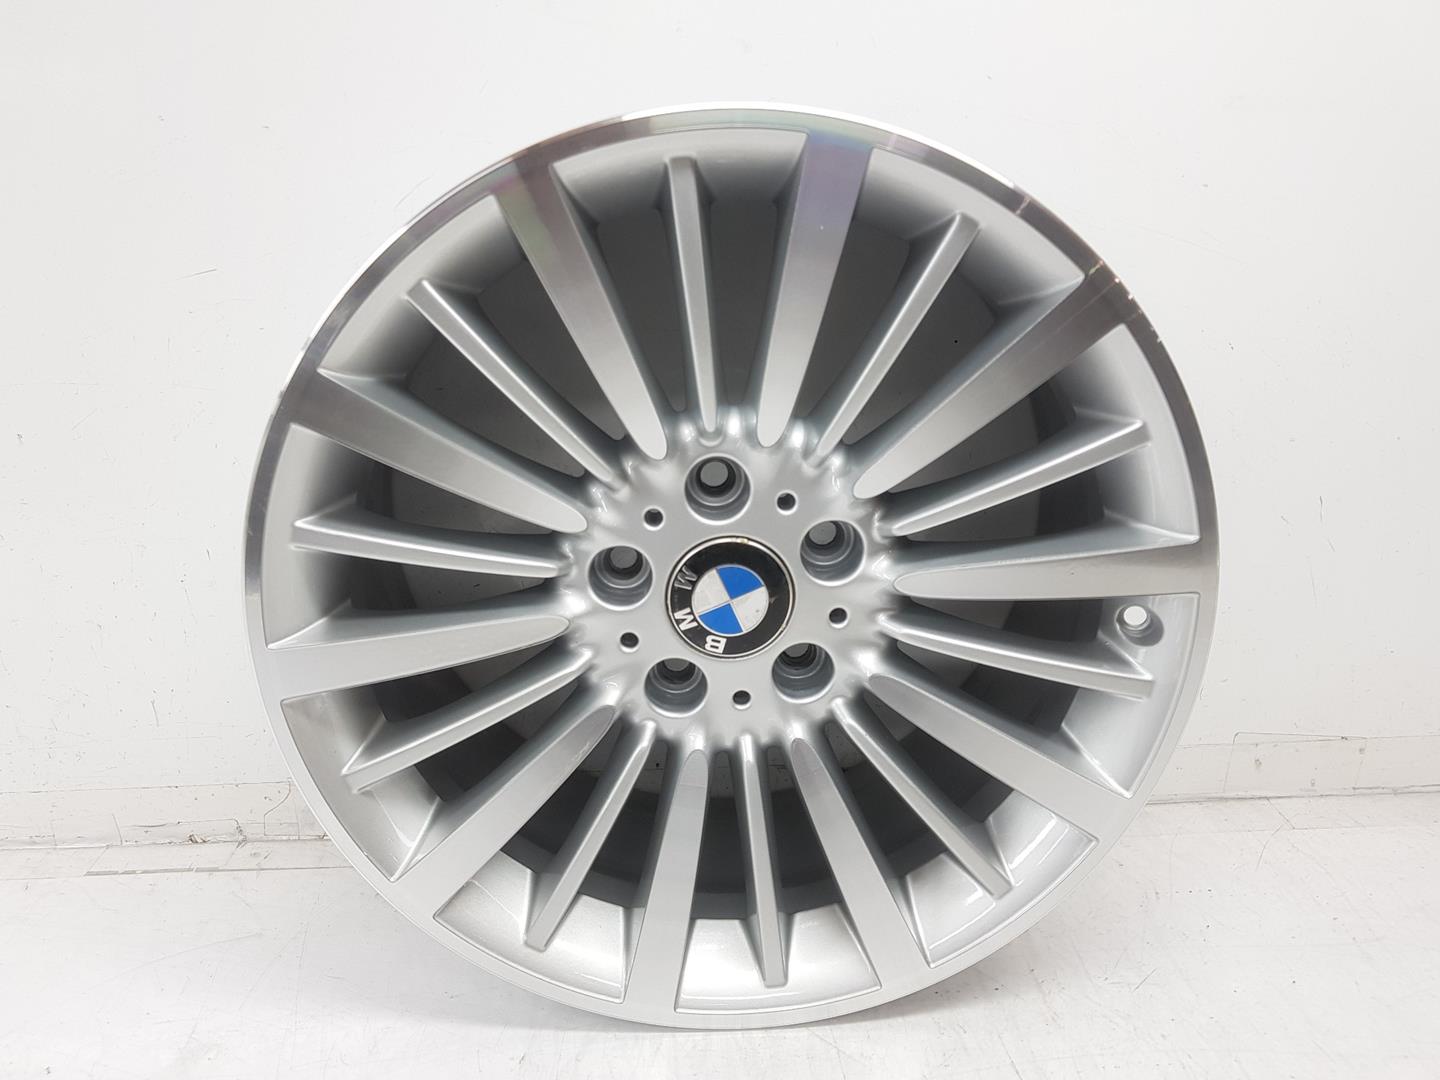 BMW 4 Series F32/F33/F36 (2013-2020) Wheel 36116796249, 8JX18, 18PULGADAS 24208587